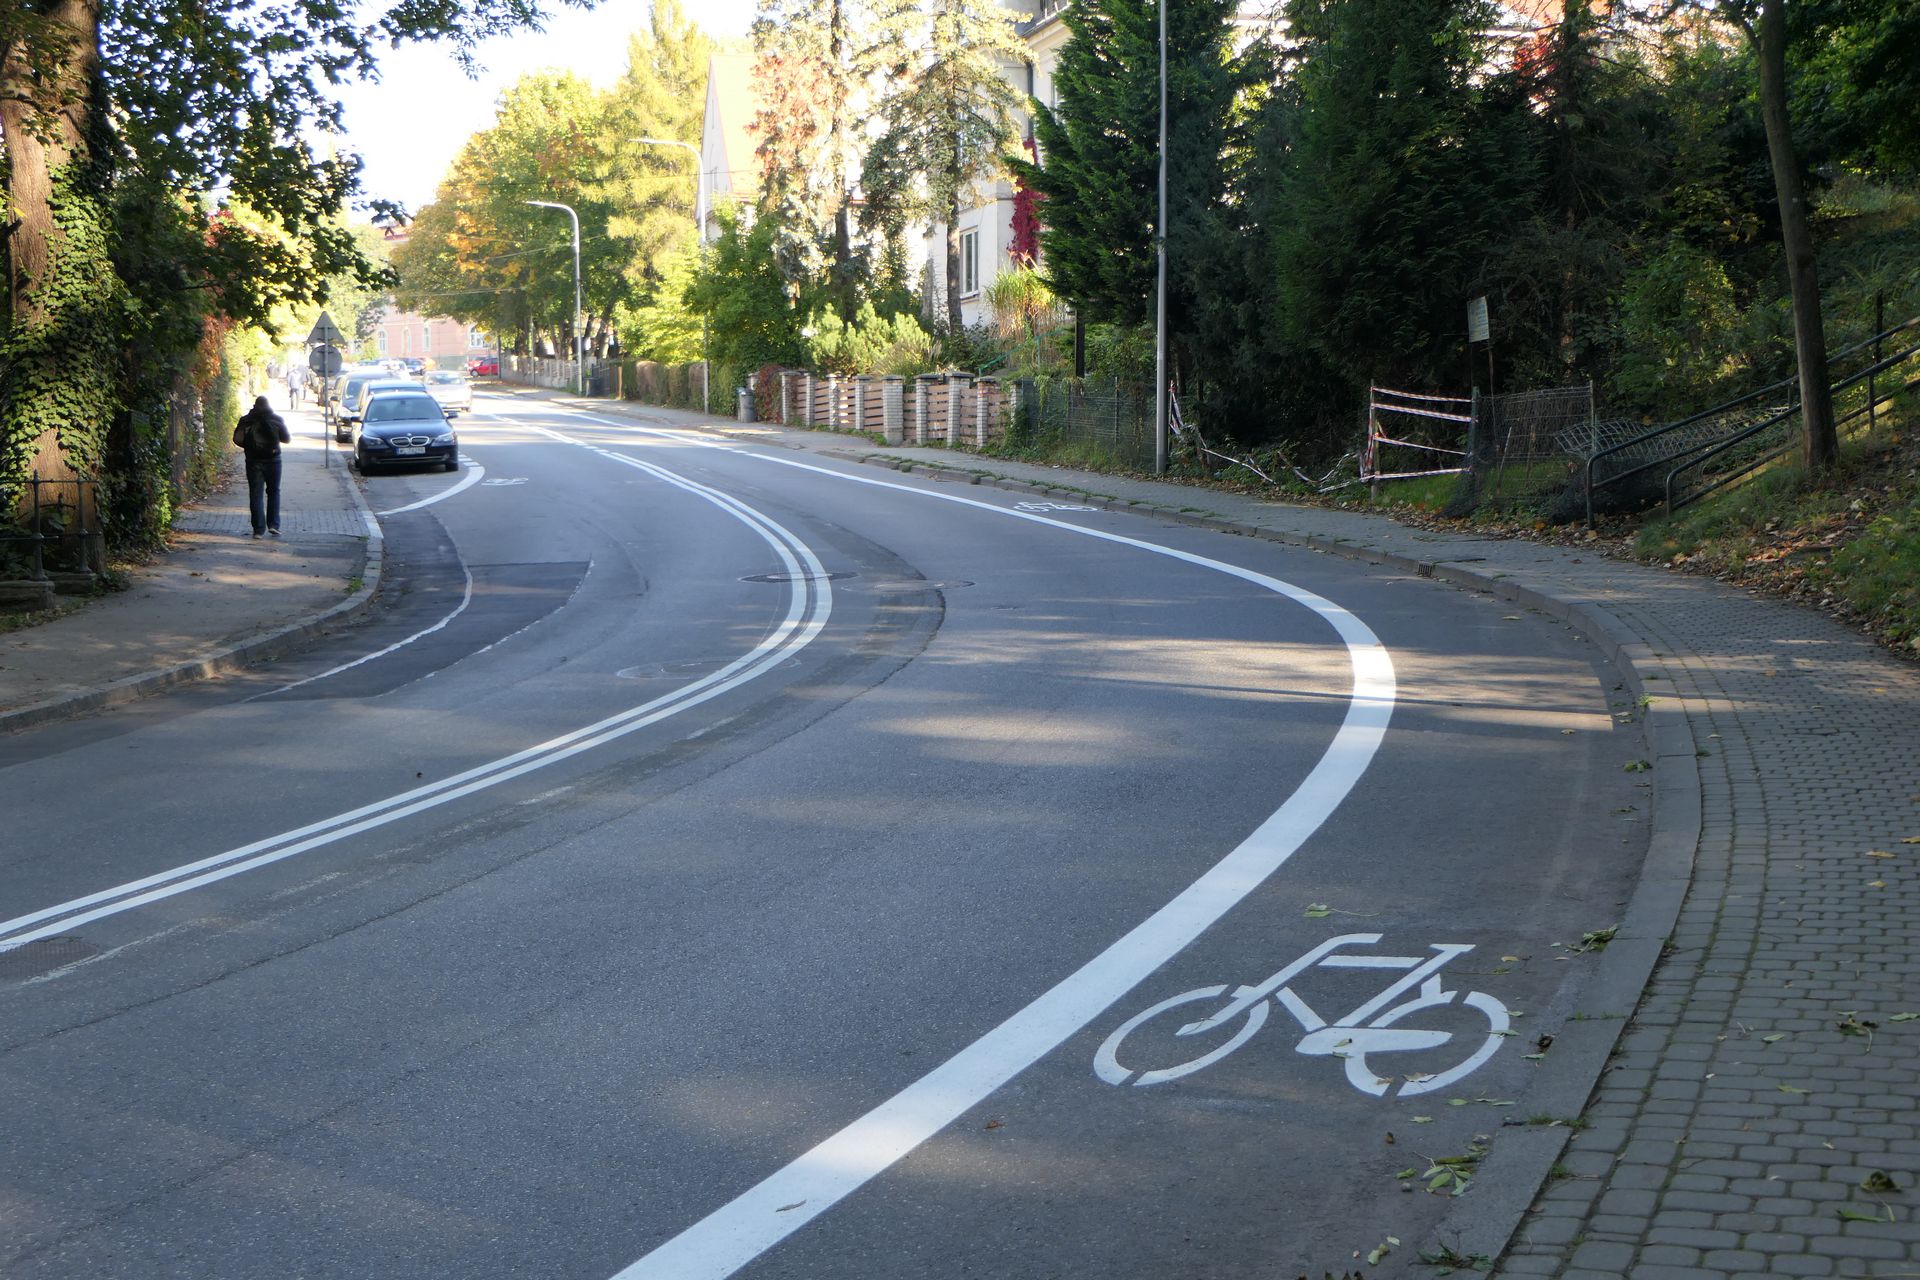 Pas dla rowerów jest wytyczony tylko dla ruchu pod górę ul. 3 Maja. Rowerzyści jadący w dół poruszają się razem z ruchem ogólnym, o czym informują wymalowane na asfalcie "sierżanty".